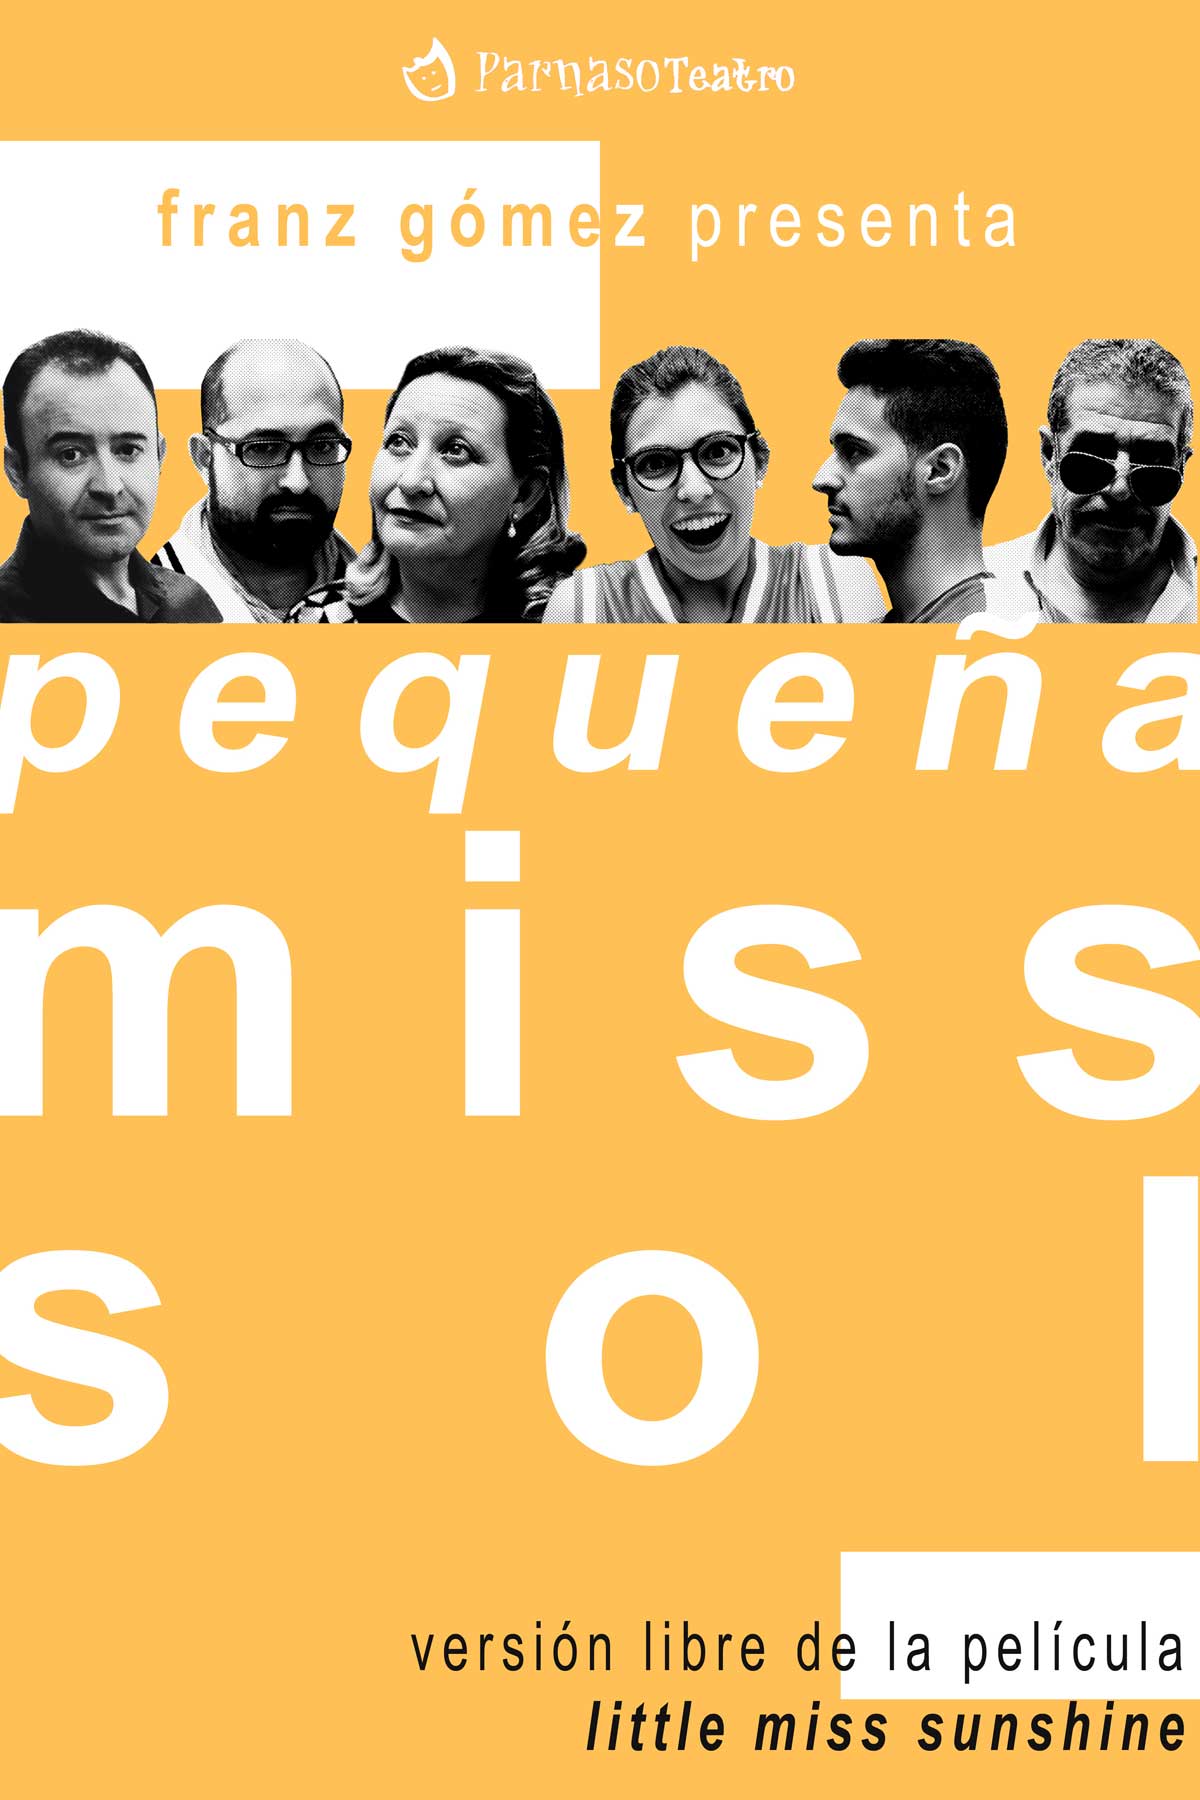 Parnaso Teatro regresa con "Pequeña Miss Sol" el sábado 21 de enero  en el Cine-Teatro Municipal de Pedro Muñoz